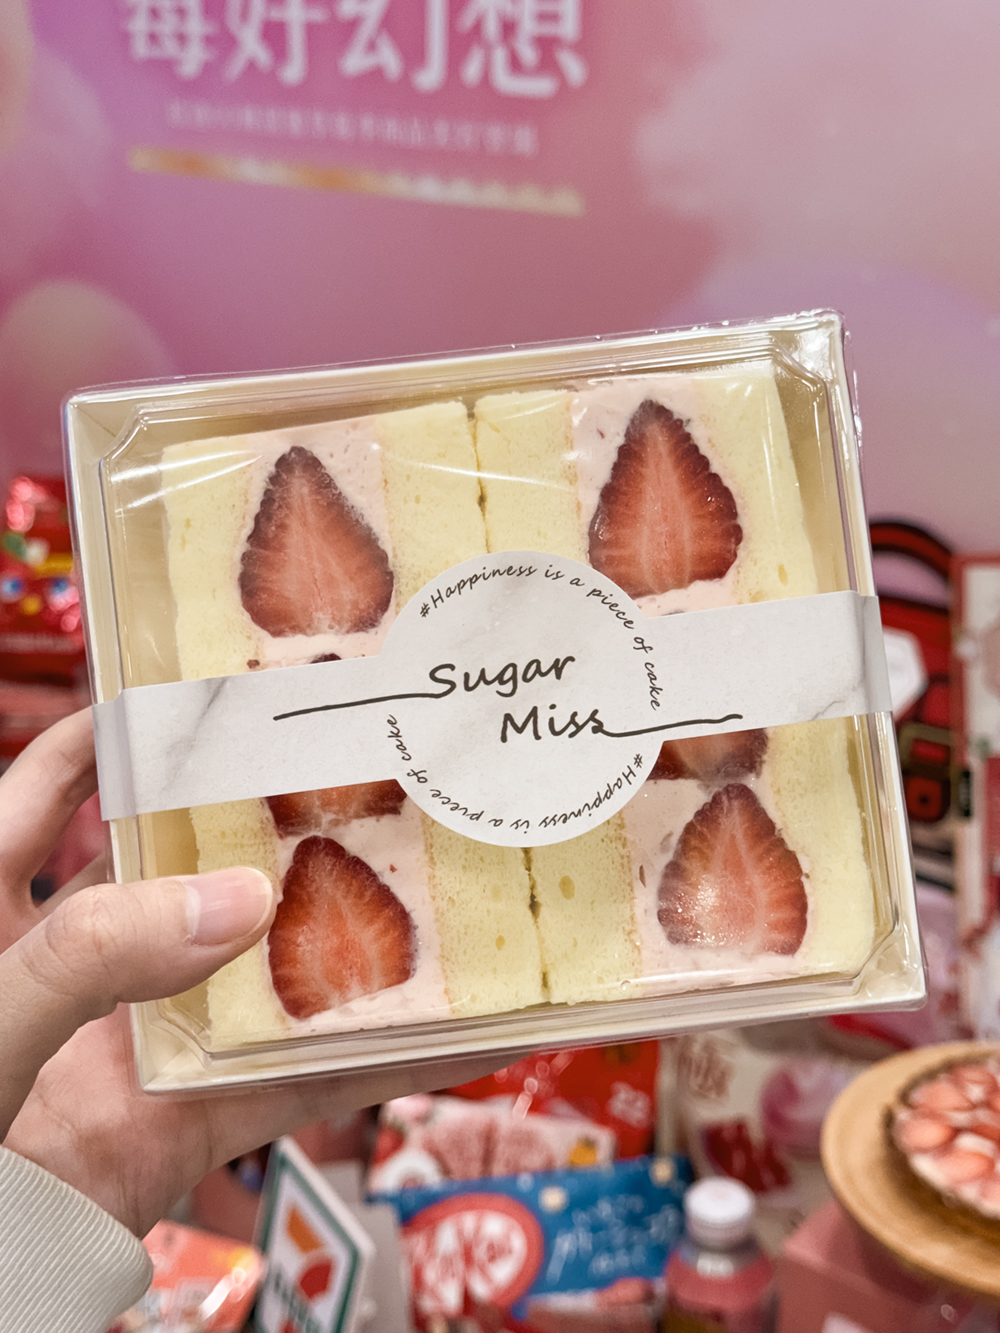 7-11 草莓季「Sugar miss 糖思日式香堤草莓蛋糕三明治」售價 500 元 2 盒